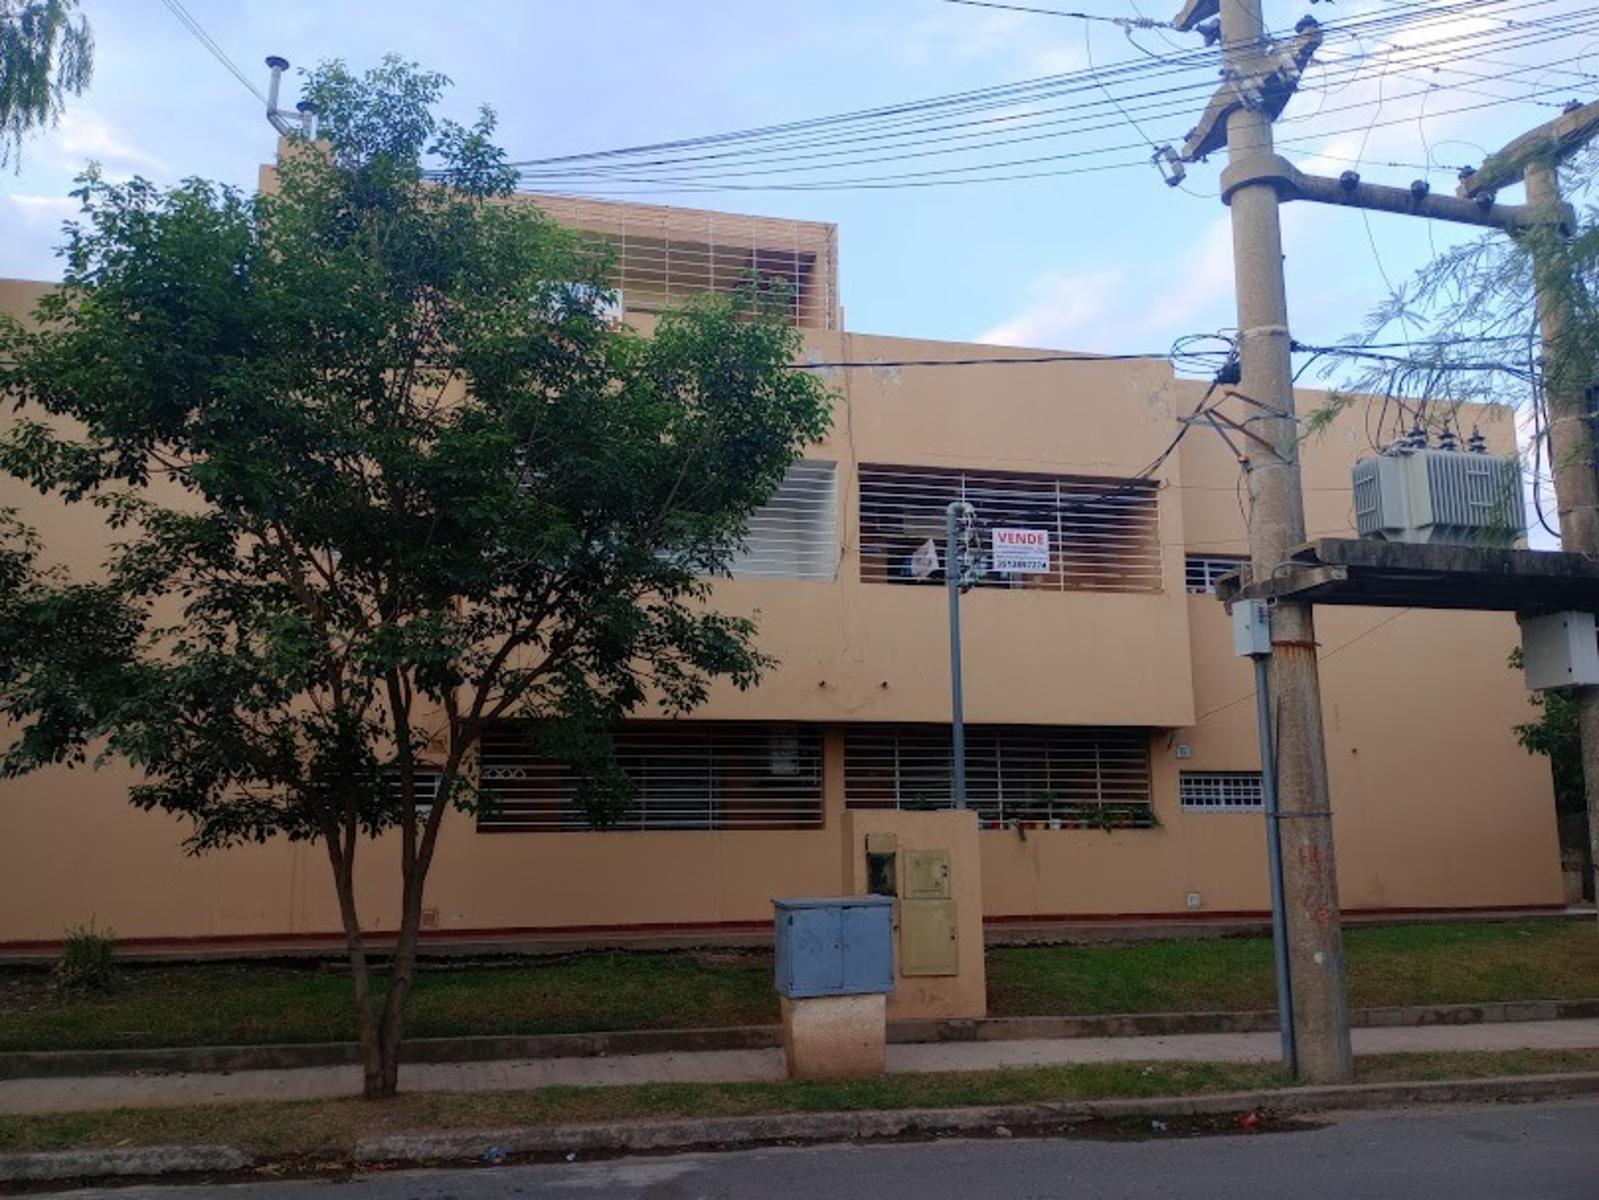 Venta Departamento 2 dormitorios balcón Amenities en Anexo Las Palmas U$S48.000.